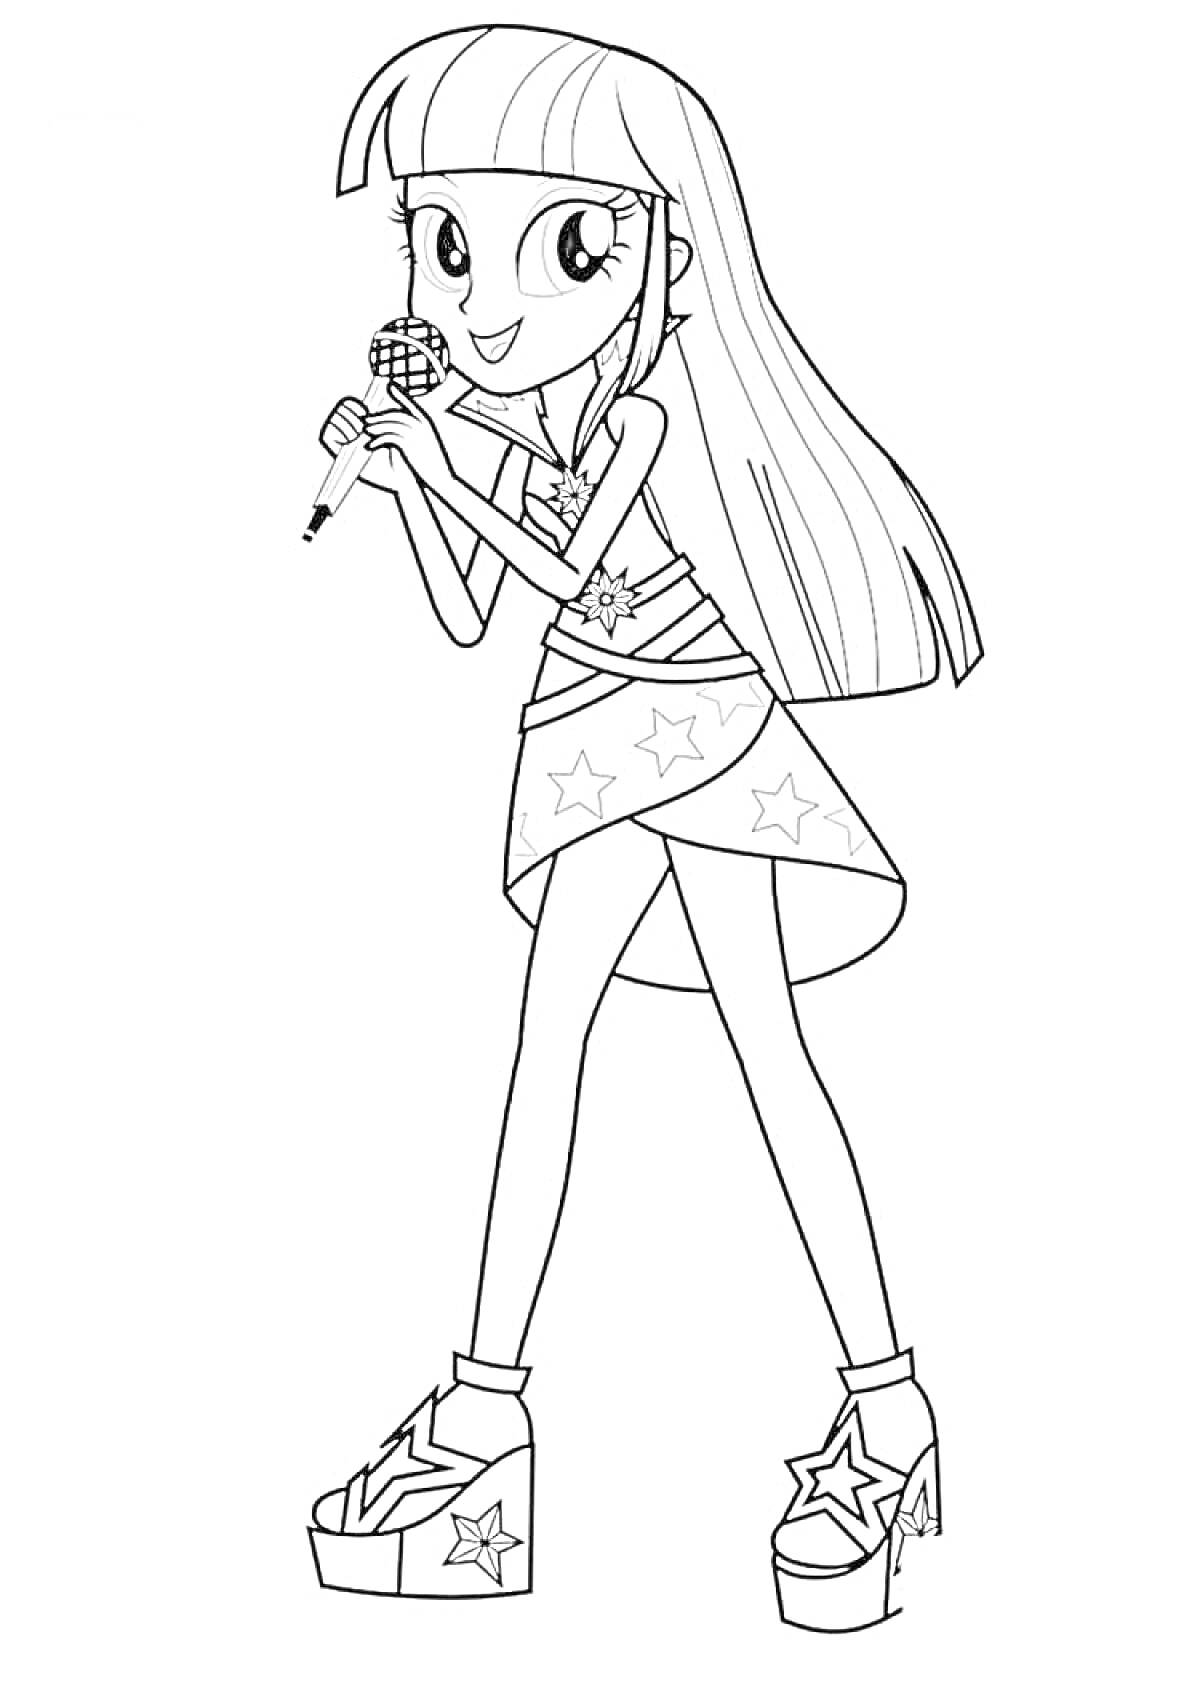 Раскраска Девочка из My Little Pony с микрофоном в руках, в юбке с звездами и на платформенных ботинках.